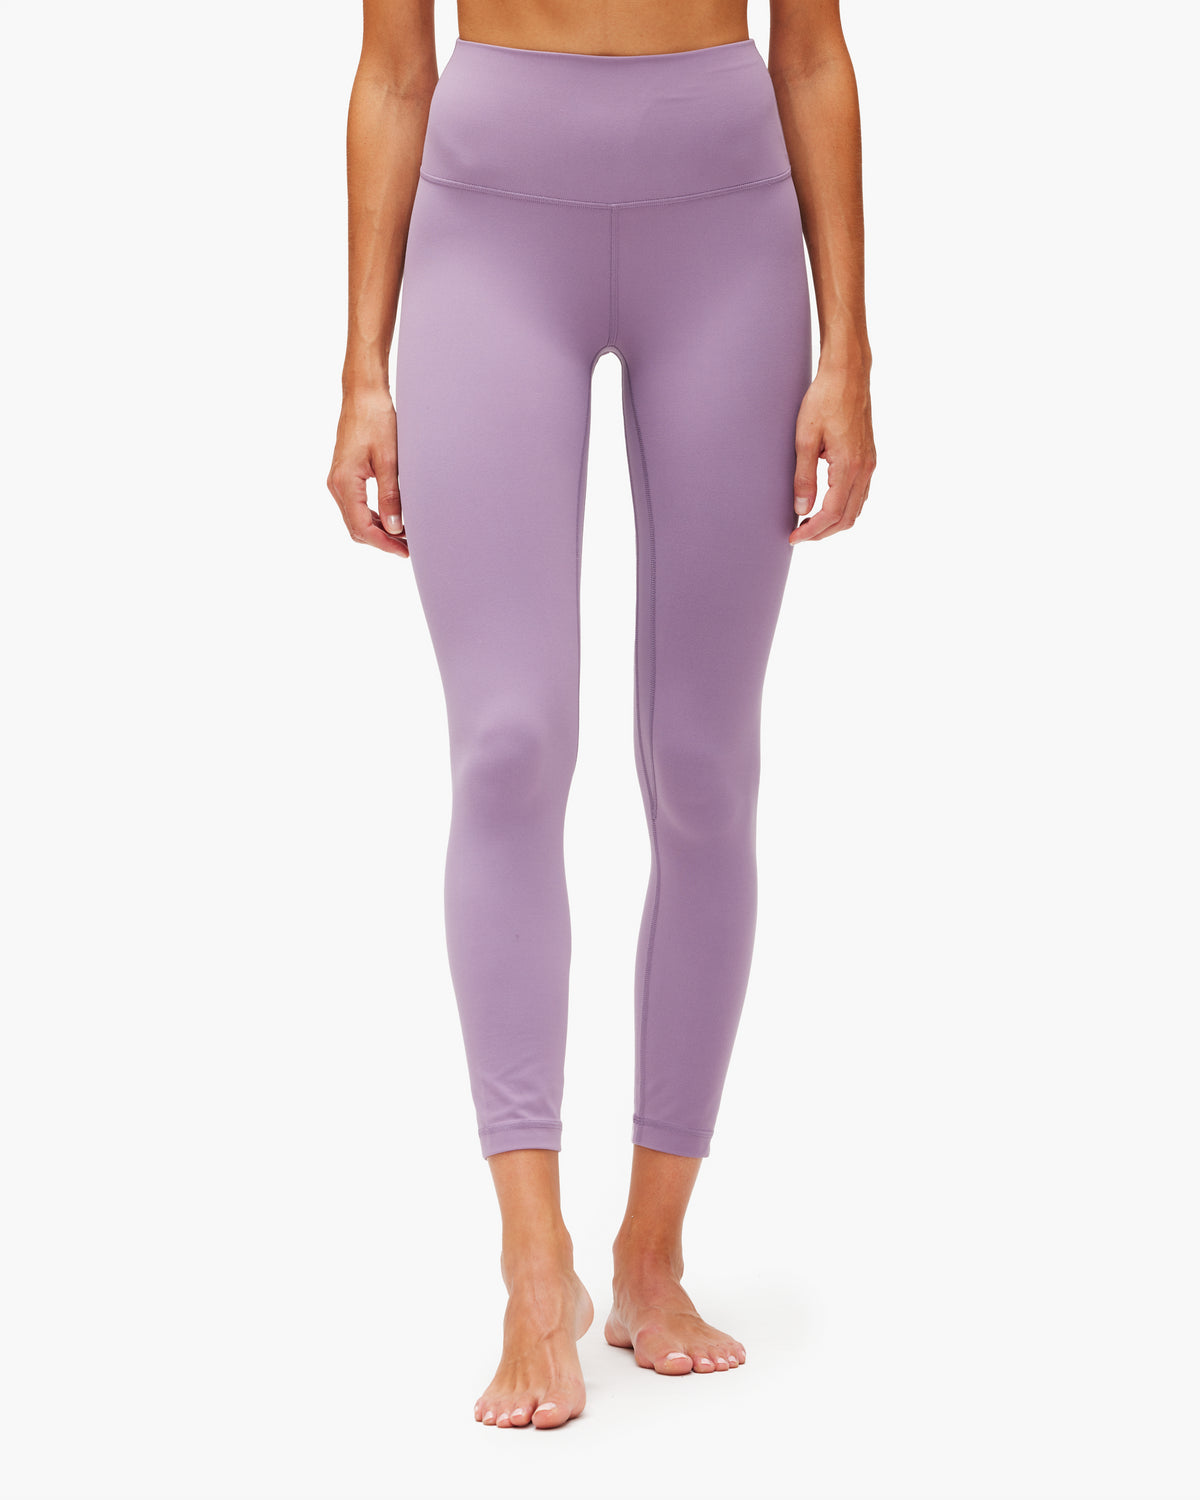 ❤️ NEW Lululemon Align Pant HR 25 - Size 4 Wisteria Purple Nulu Yoga  Tights NWT